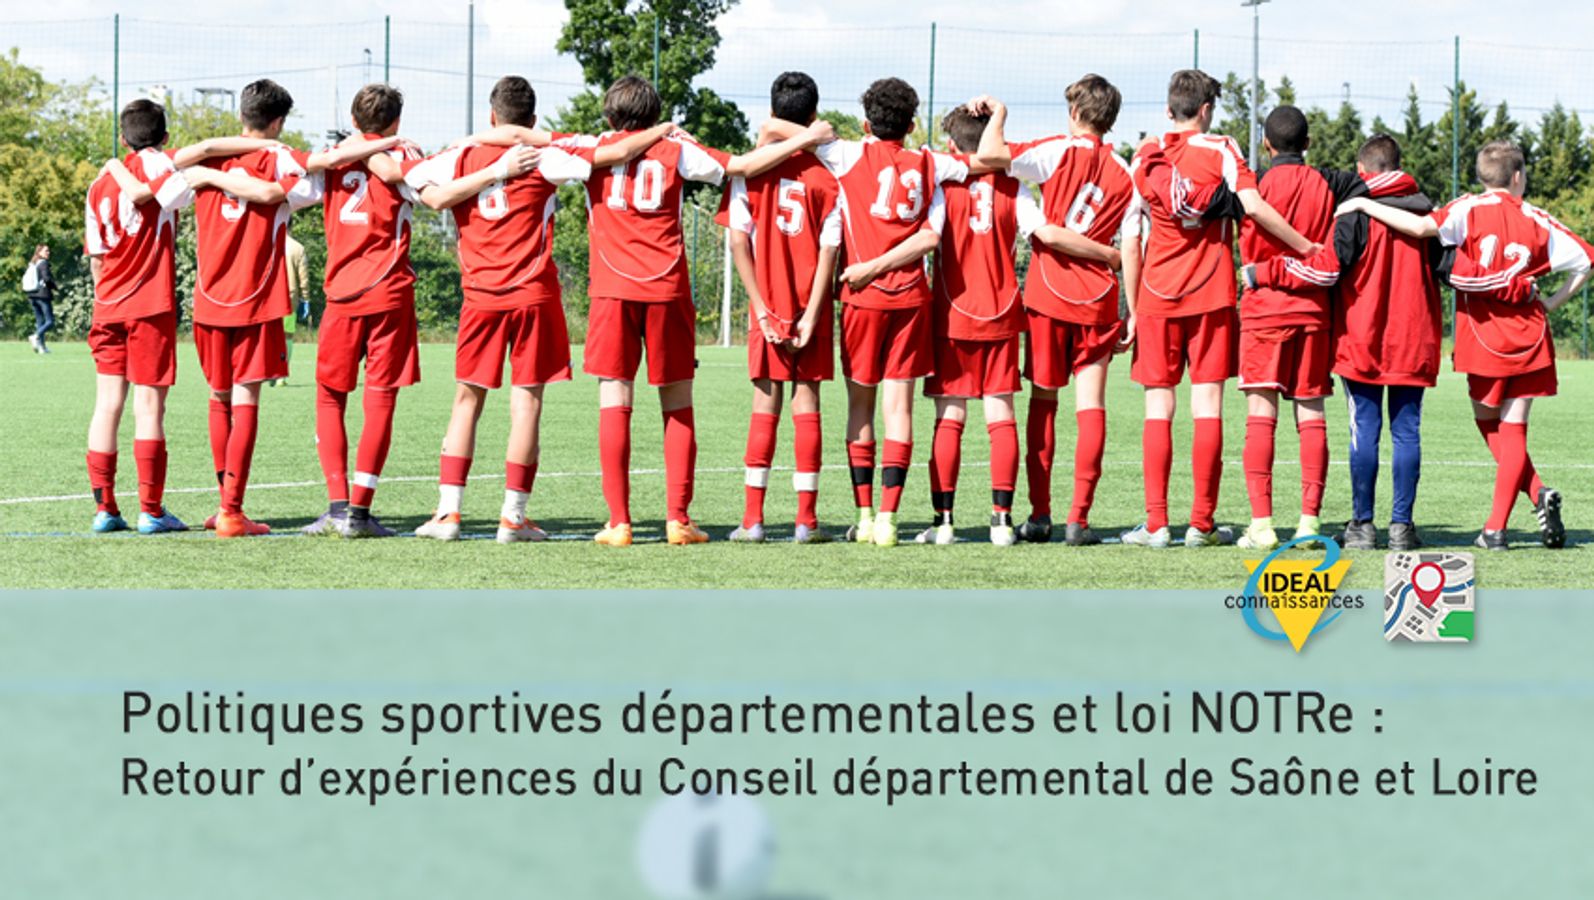 Politiques sportives départementales et loi NOTRe : Retour d’expériences du Conseil départemental de Saône et Loire